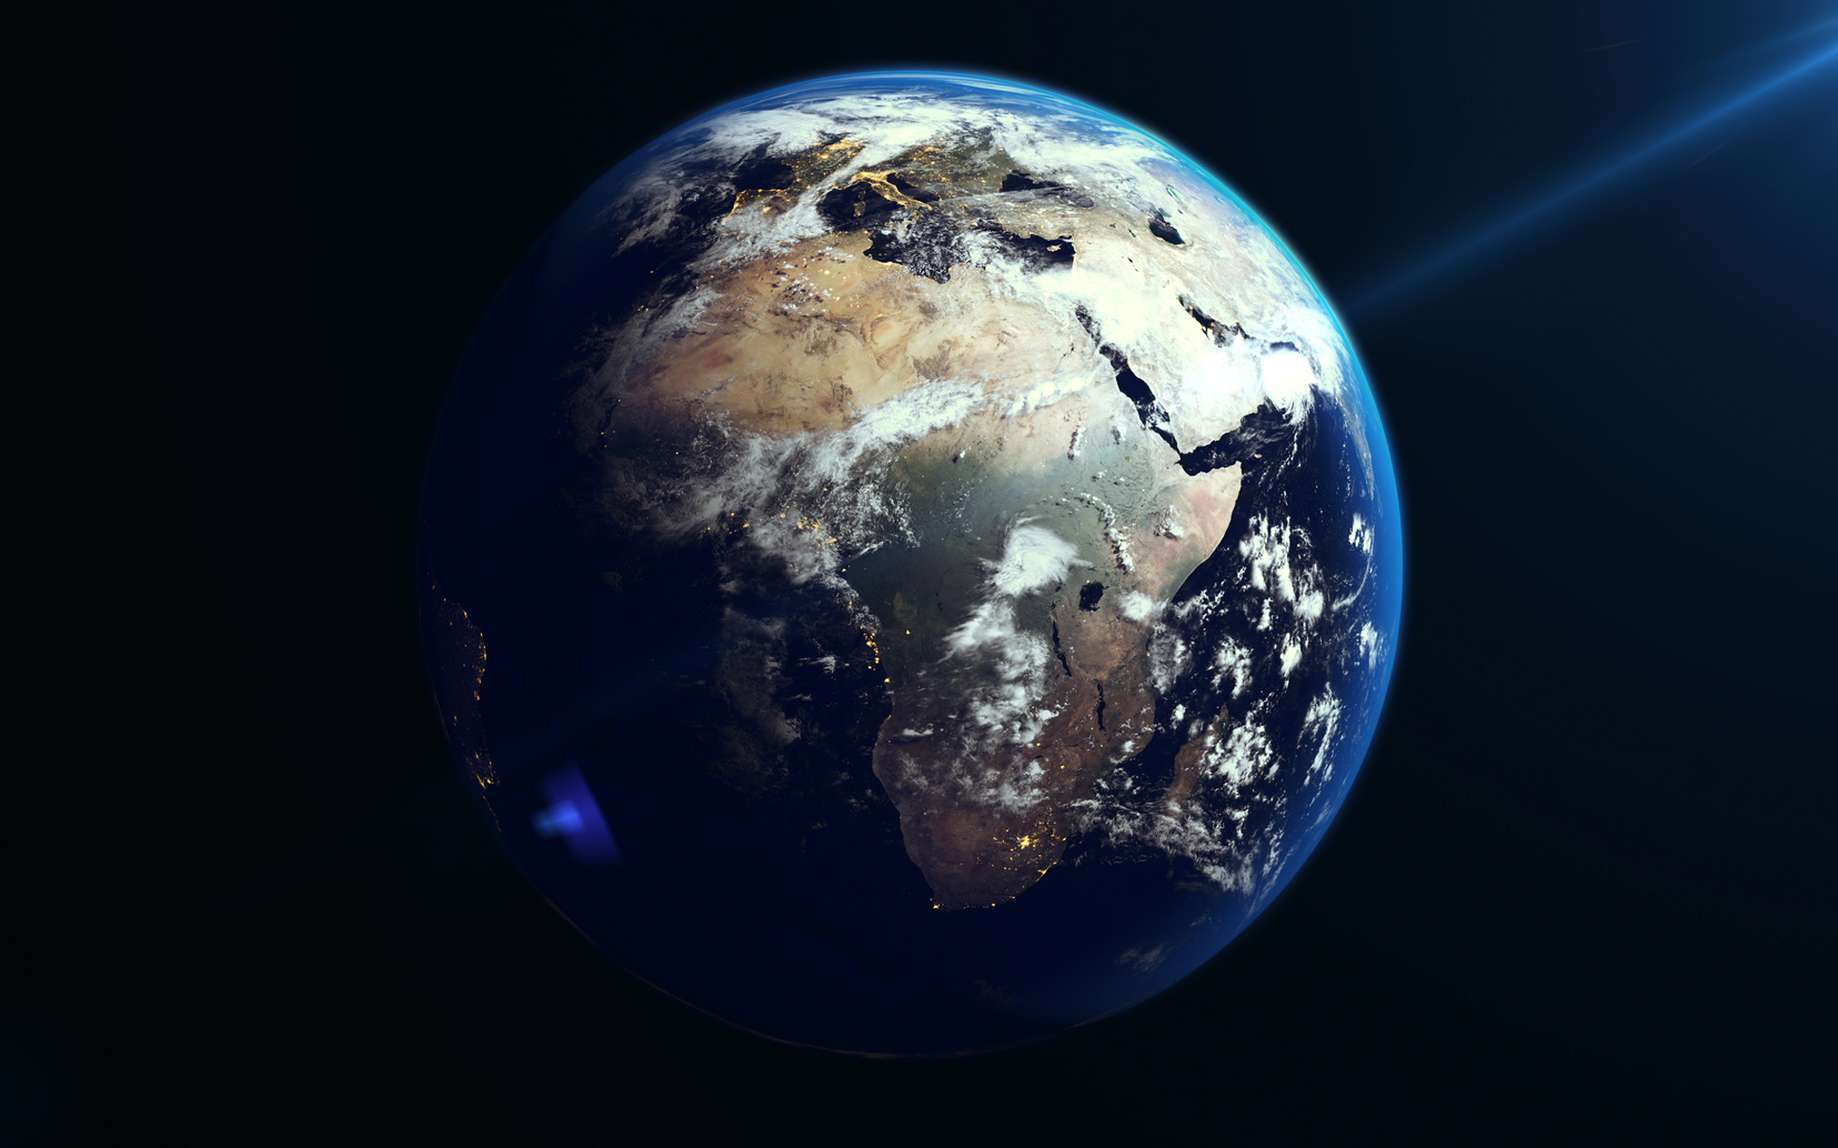 Illustration de la Terre vue de l'espace. © Shutterstock